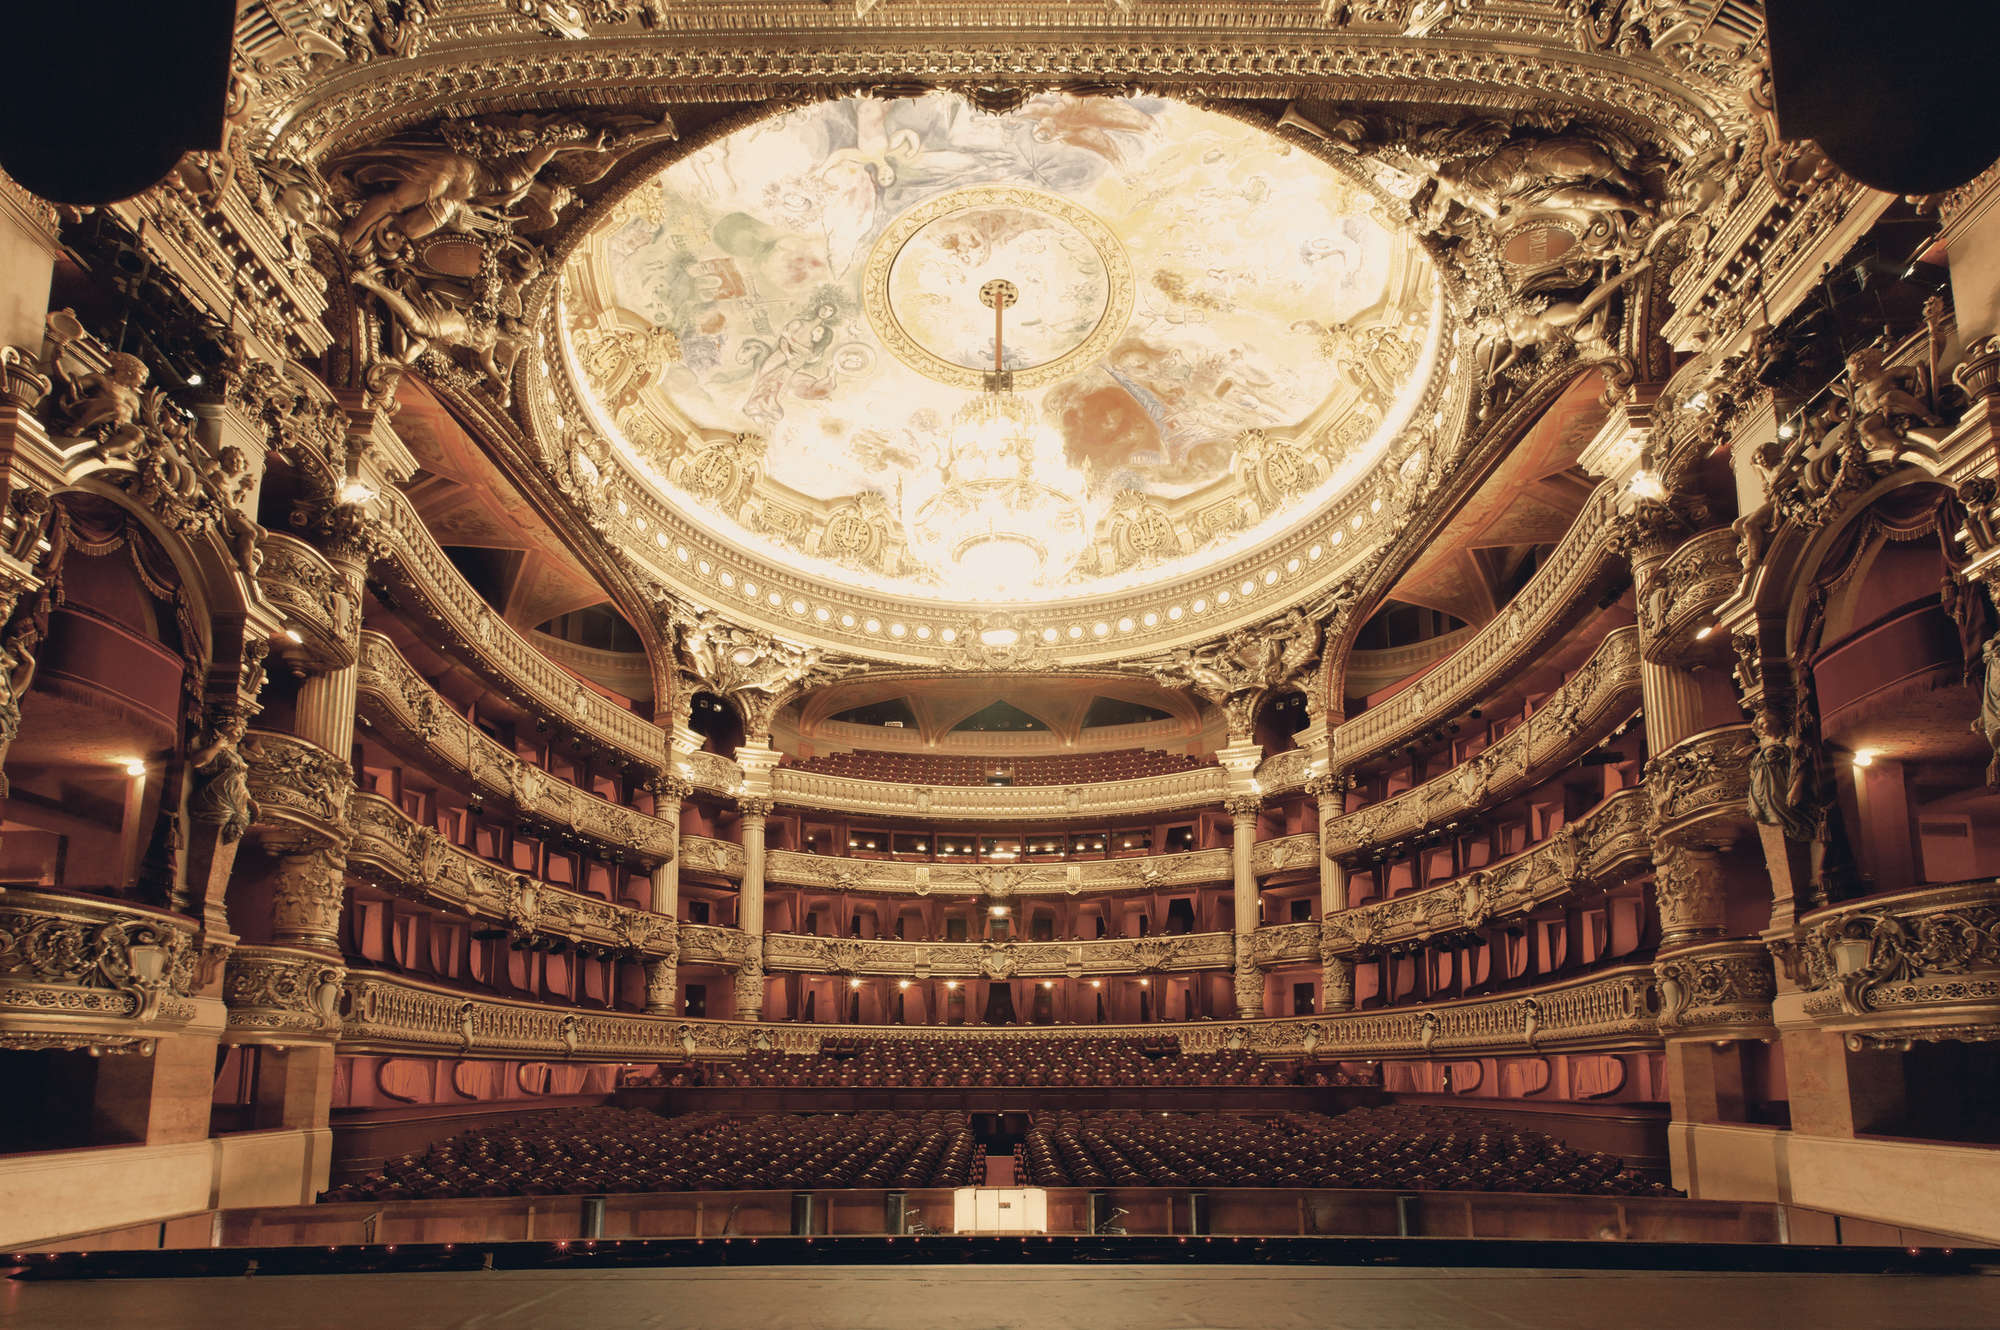             Ópera de París - Mural Vista panorámica de la Ópera
        